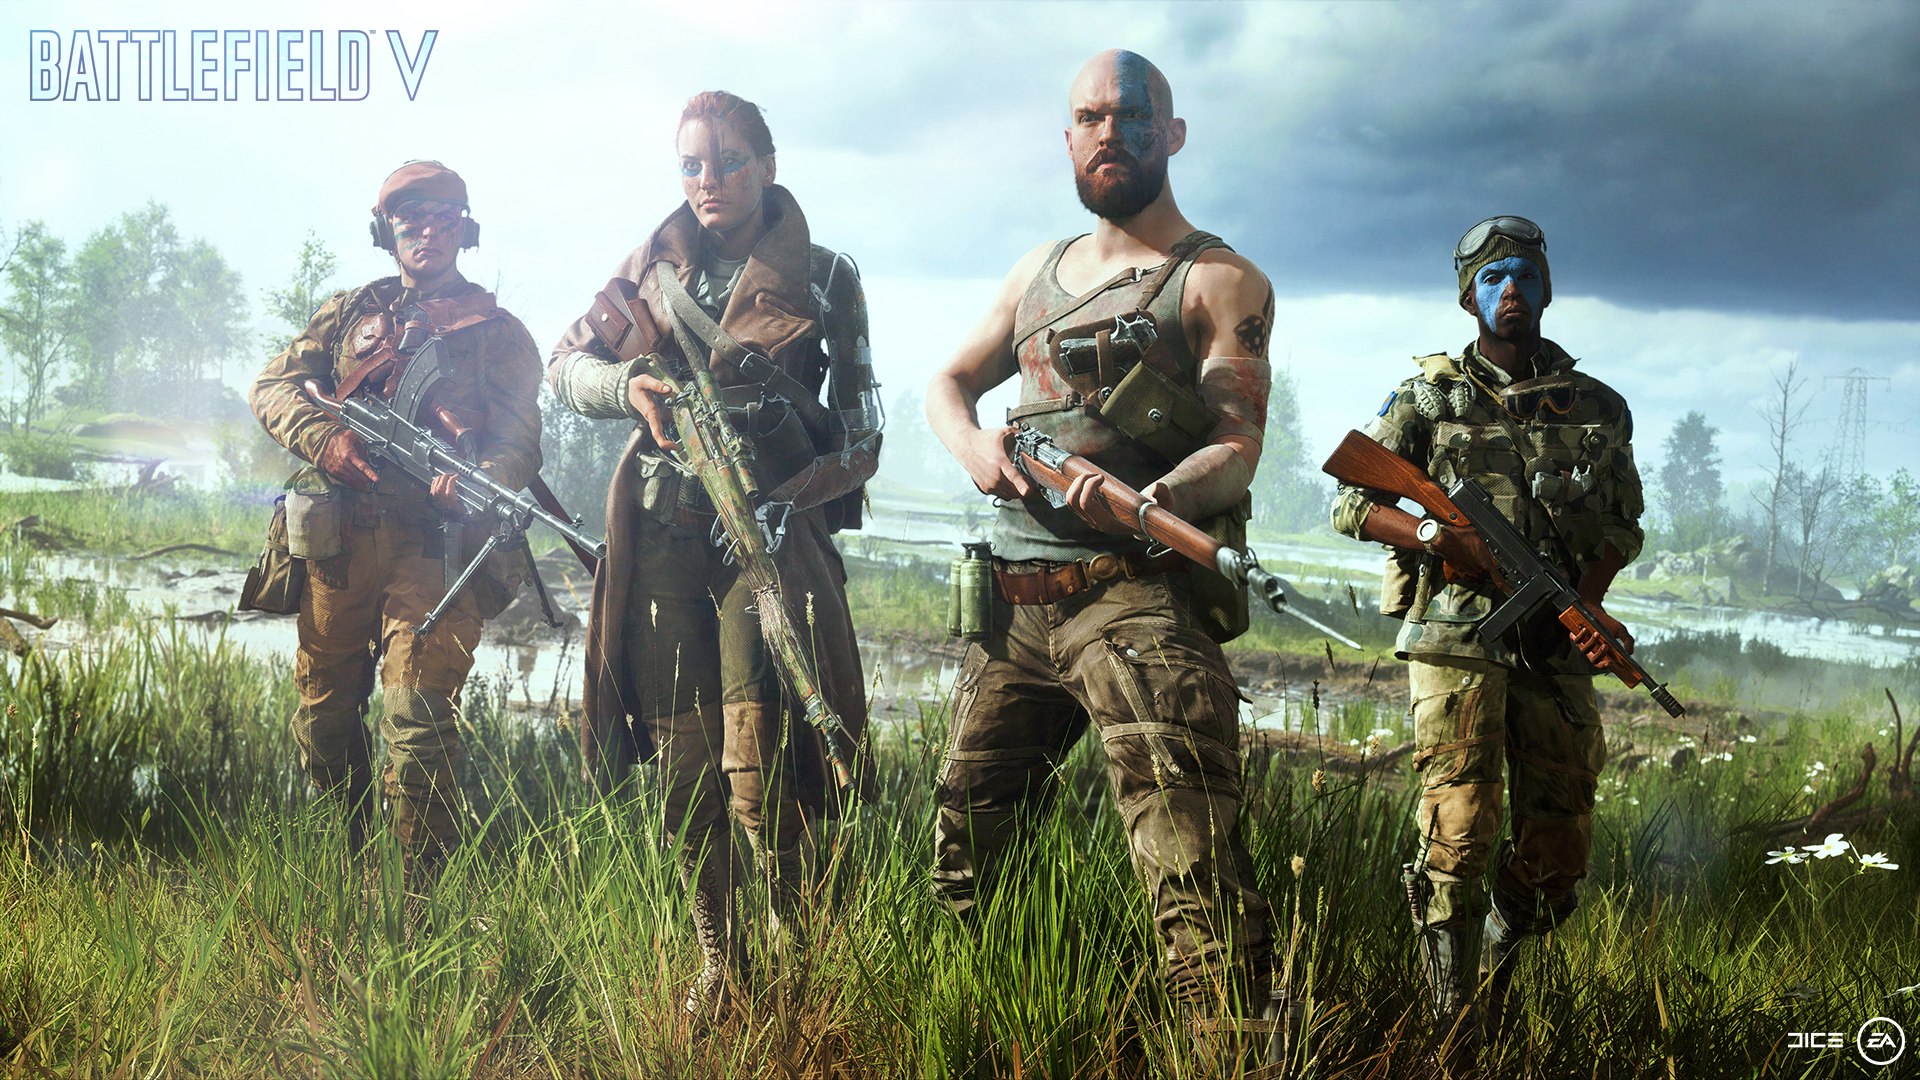 RÃ©sultat de recherche d'images pour "Battlefield V compagnie"